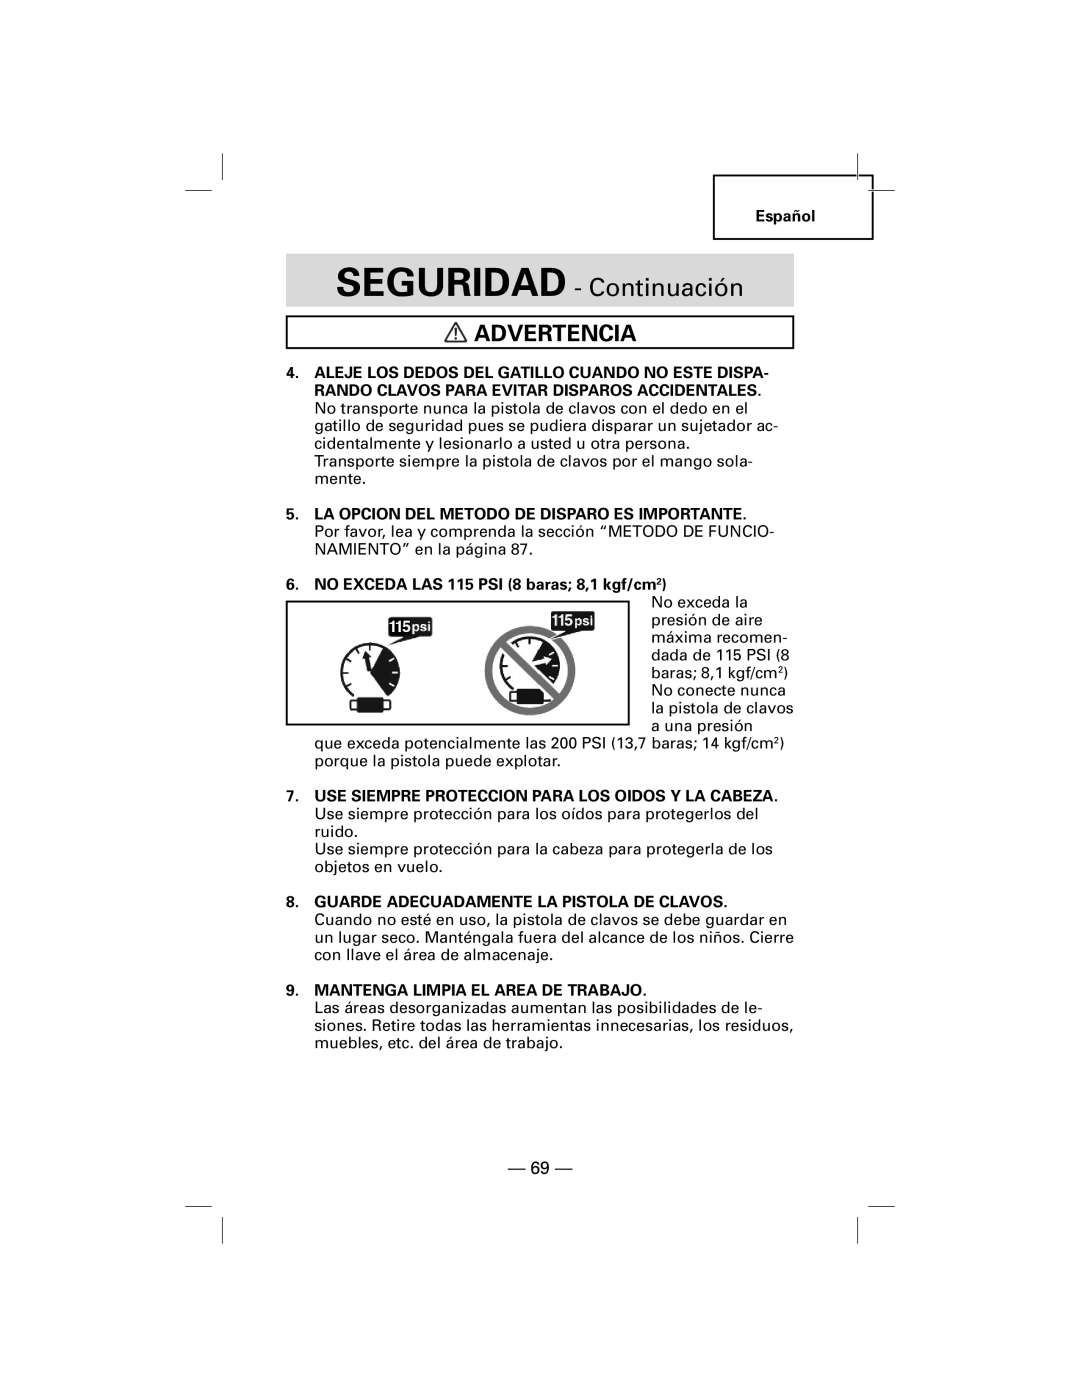 Hitachi NT50AGF manual SEGURIDAD - Continuación, Advertencia 